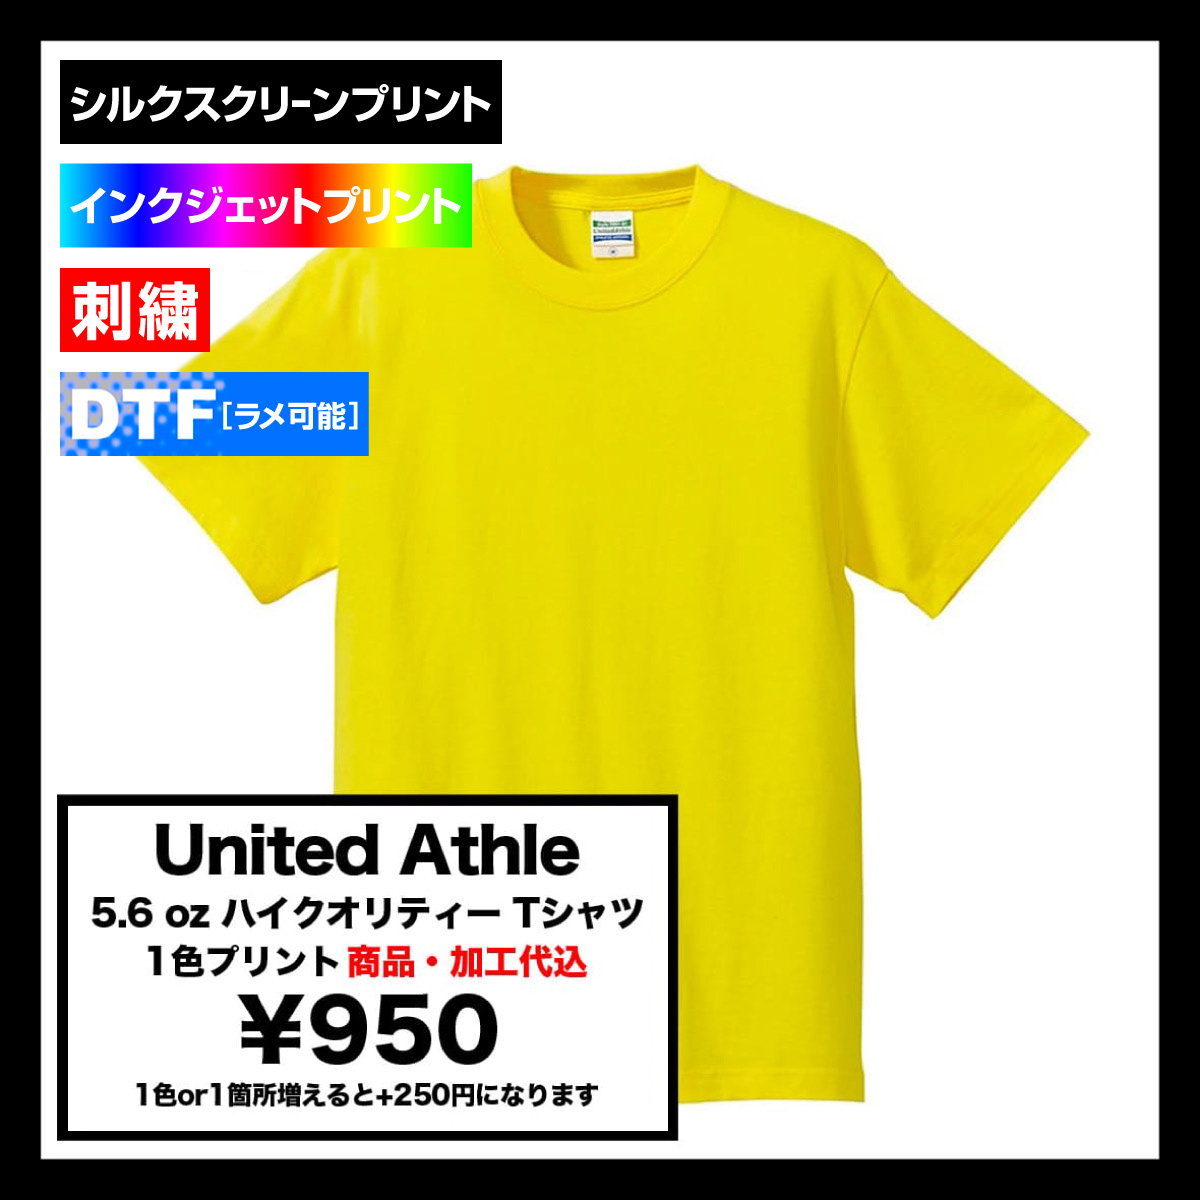 United Athle ユナイテッドアスレ 5.6 oz ハイクオリティー Tシャツ (品番5001-01)